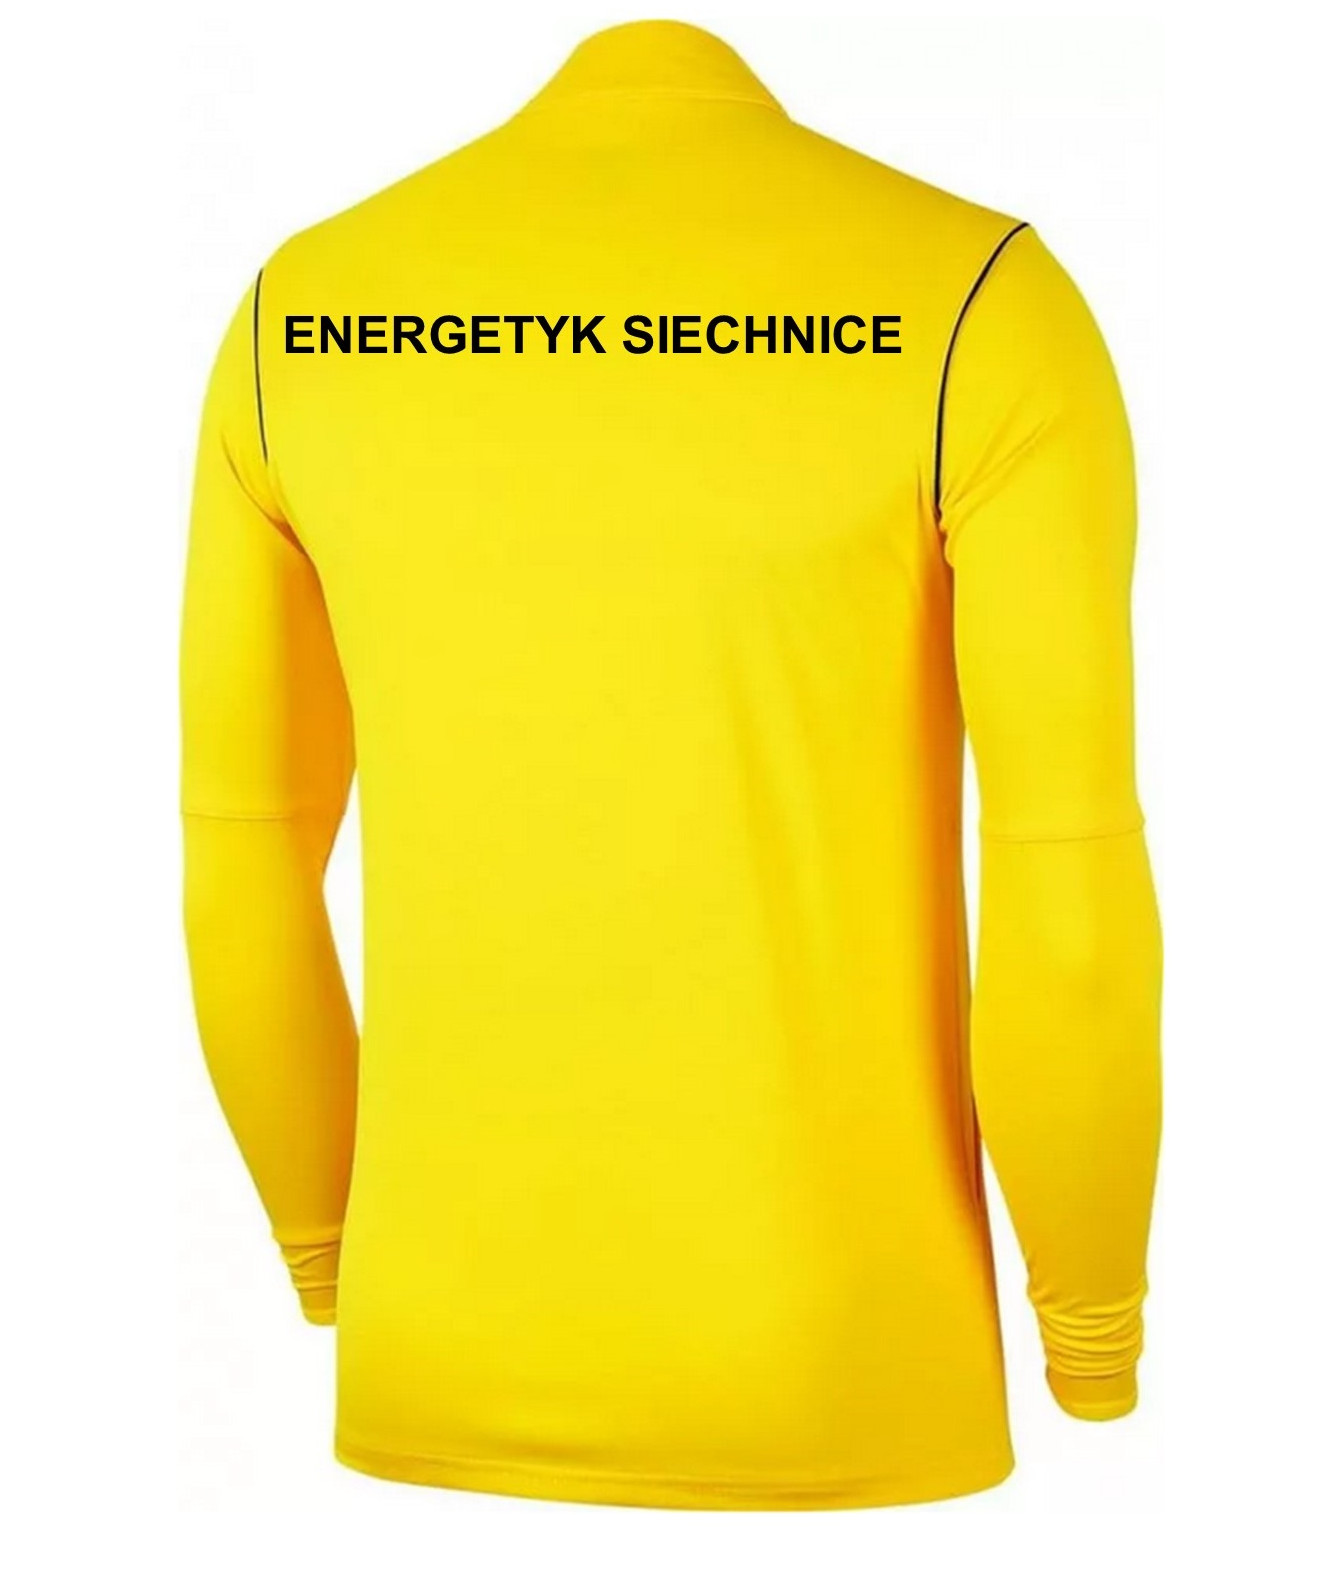 Bluza wyjściowa/treningowa Energetyk